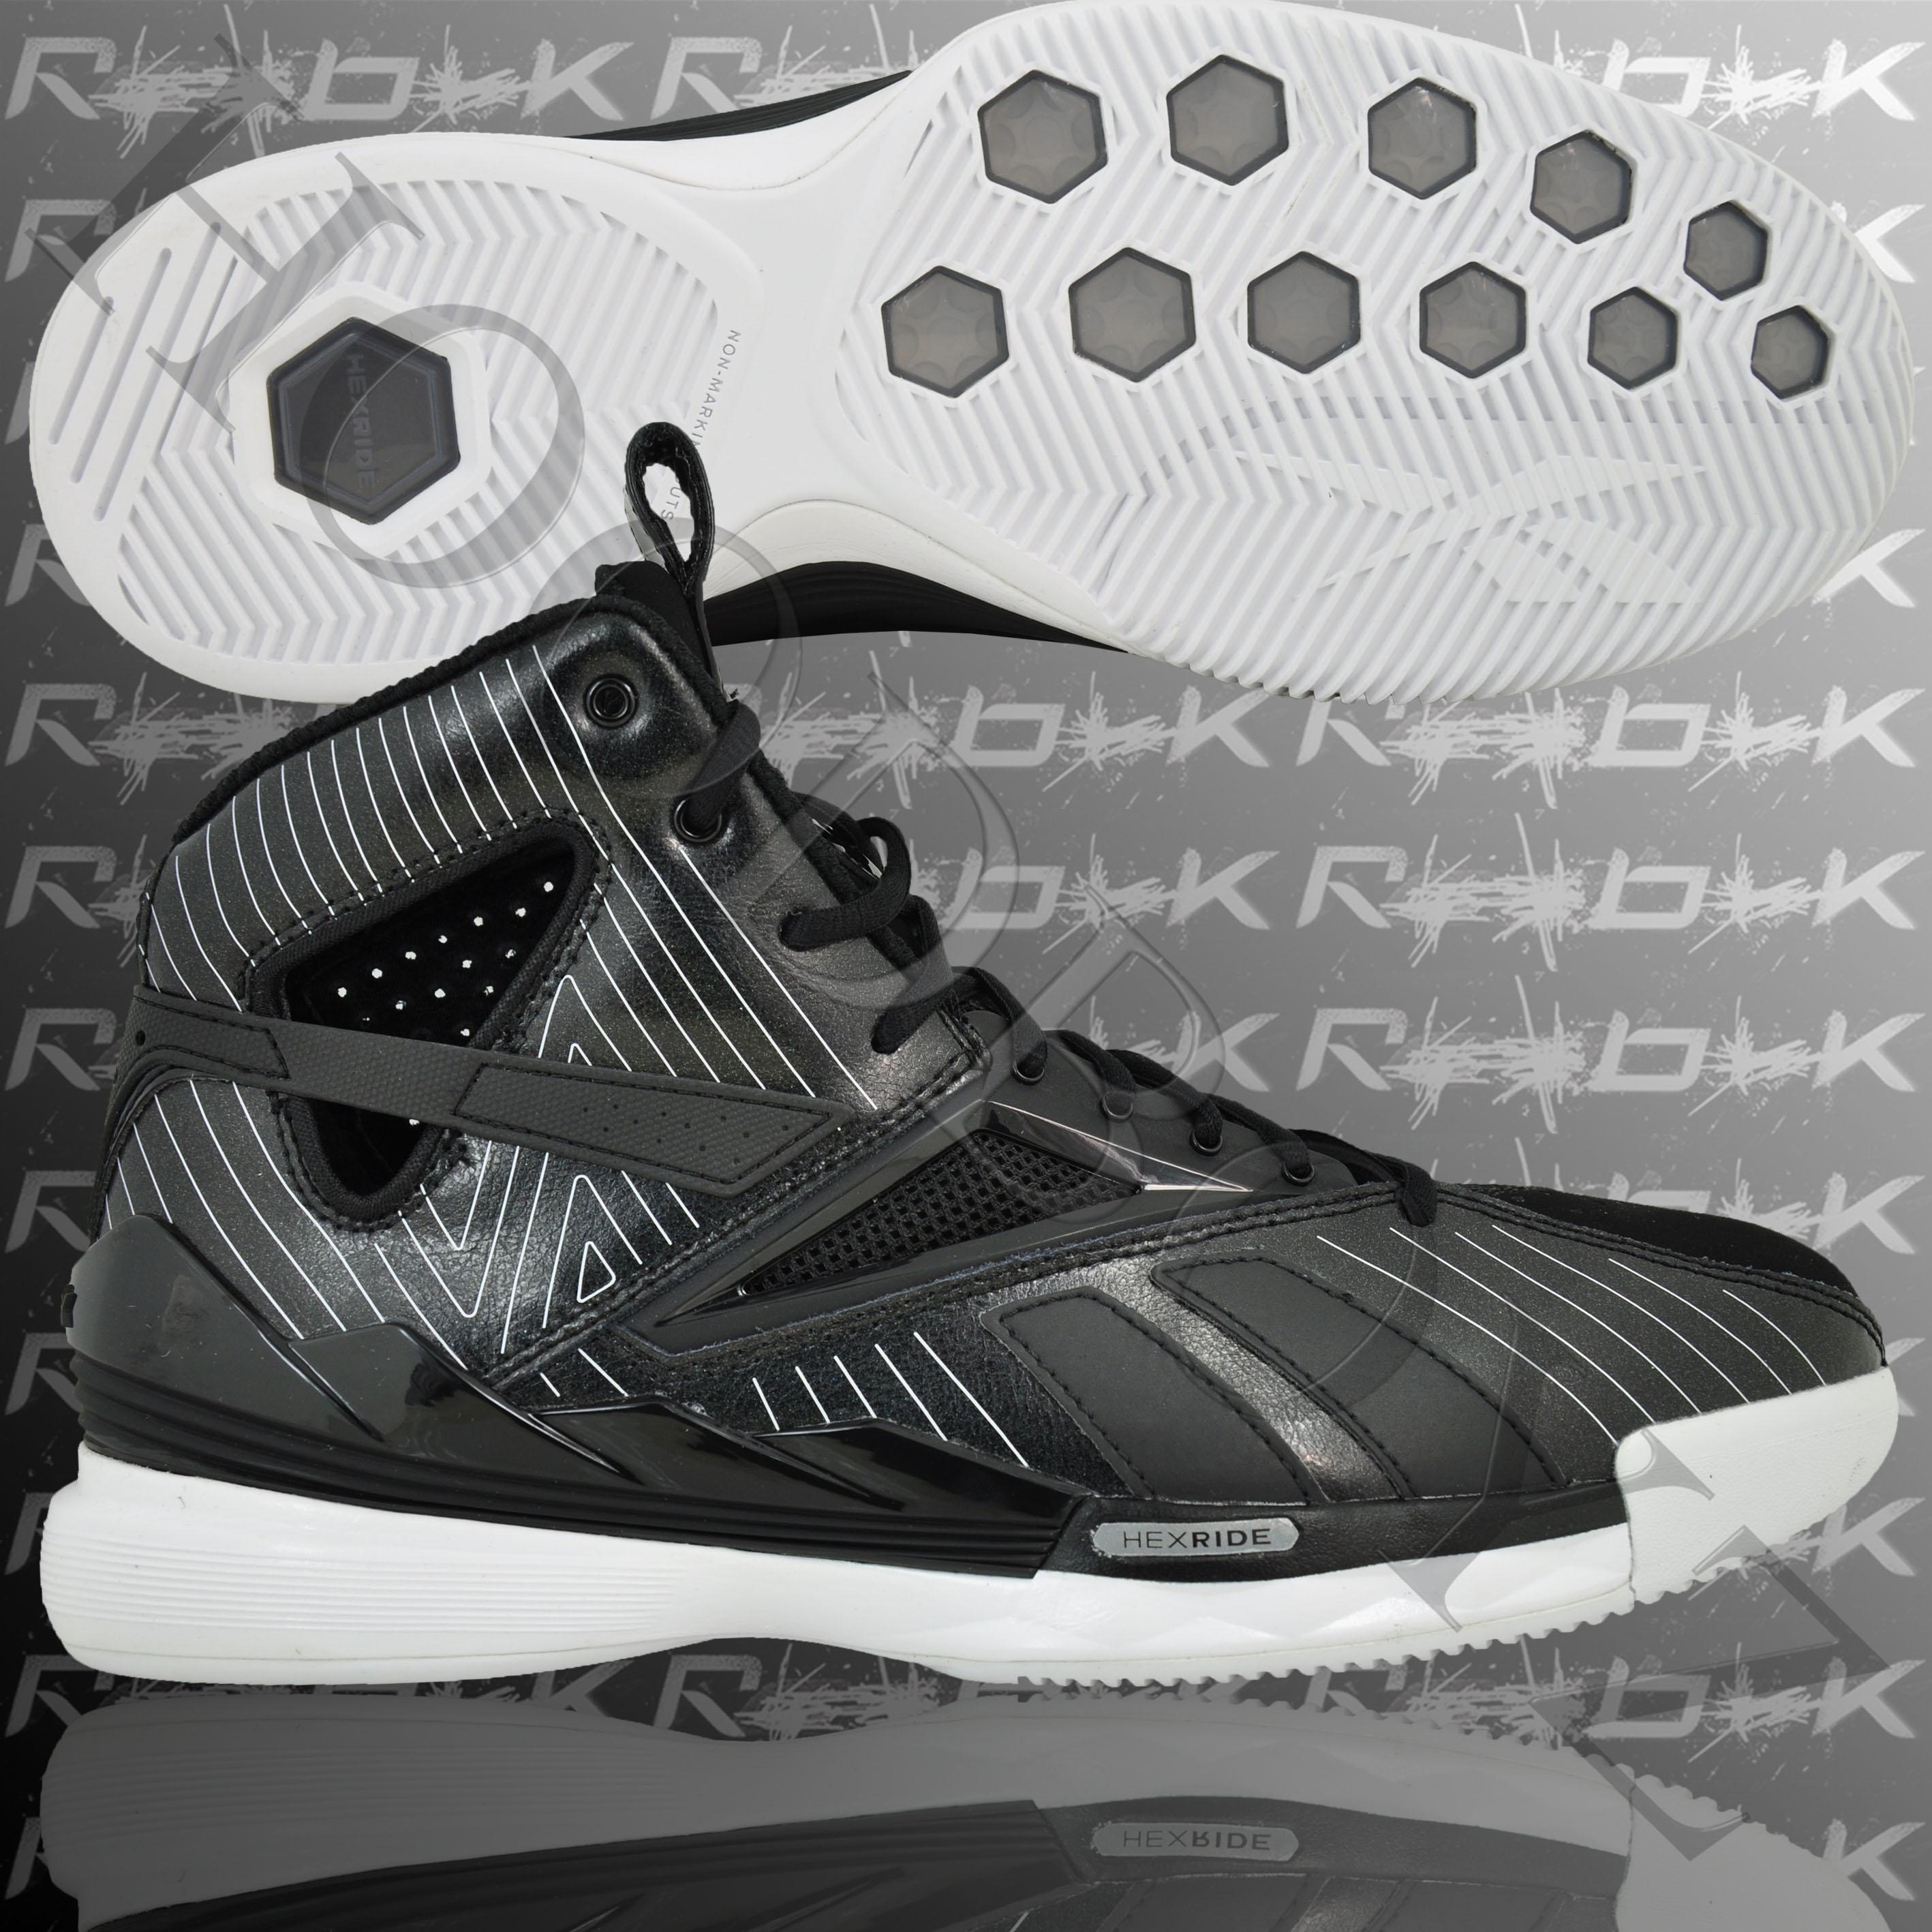 Foto Reebok Kamikaze 2k10 Zapatillas De Baloncesto Negro